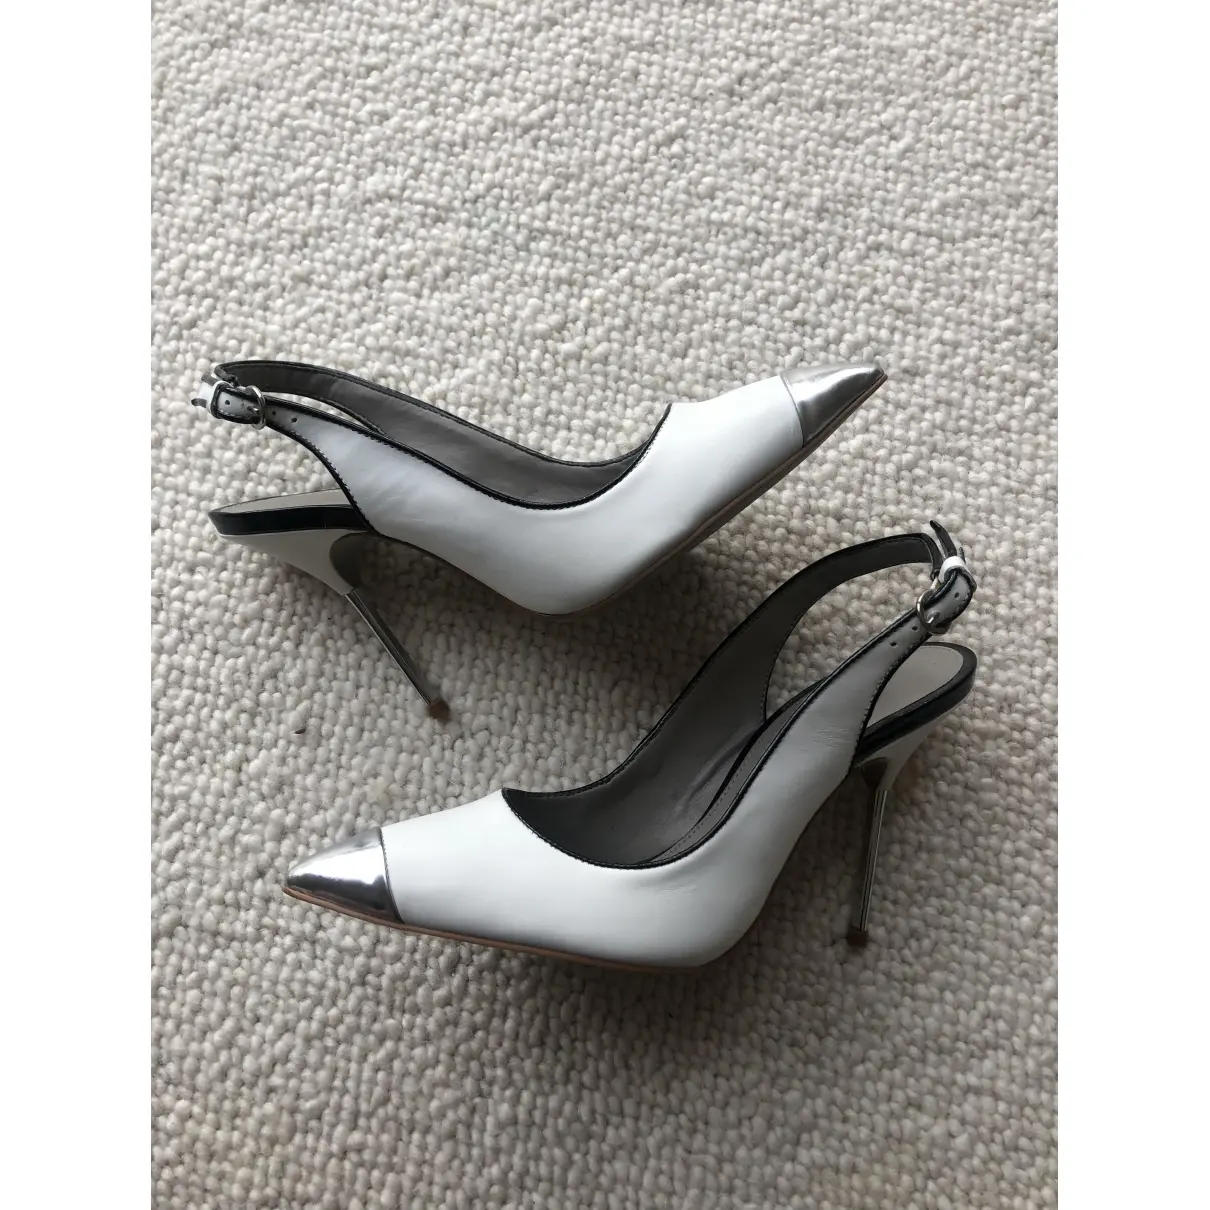 Buy Kurt Geiger Leather heels online